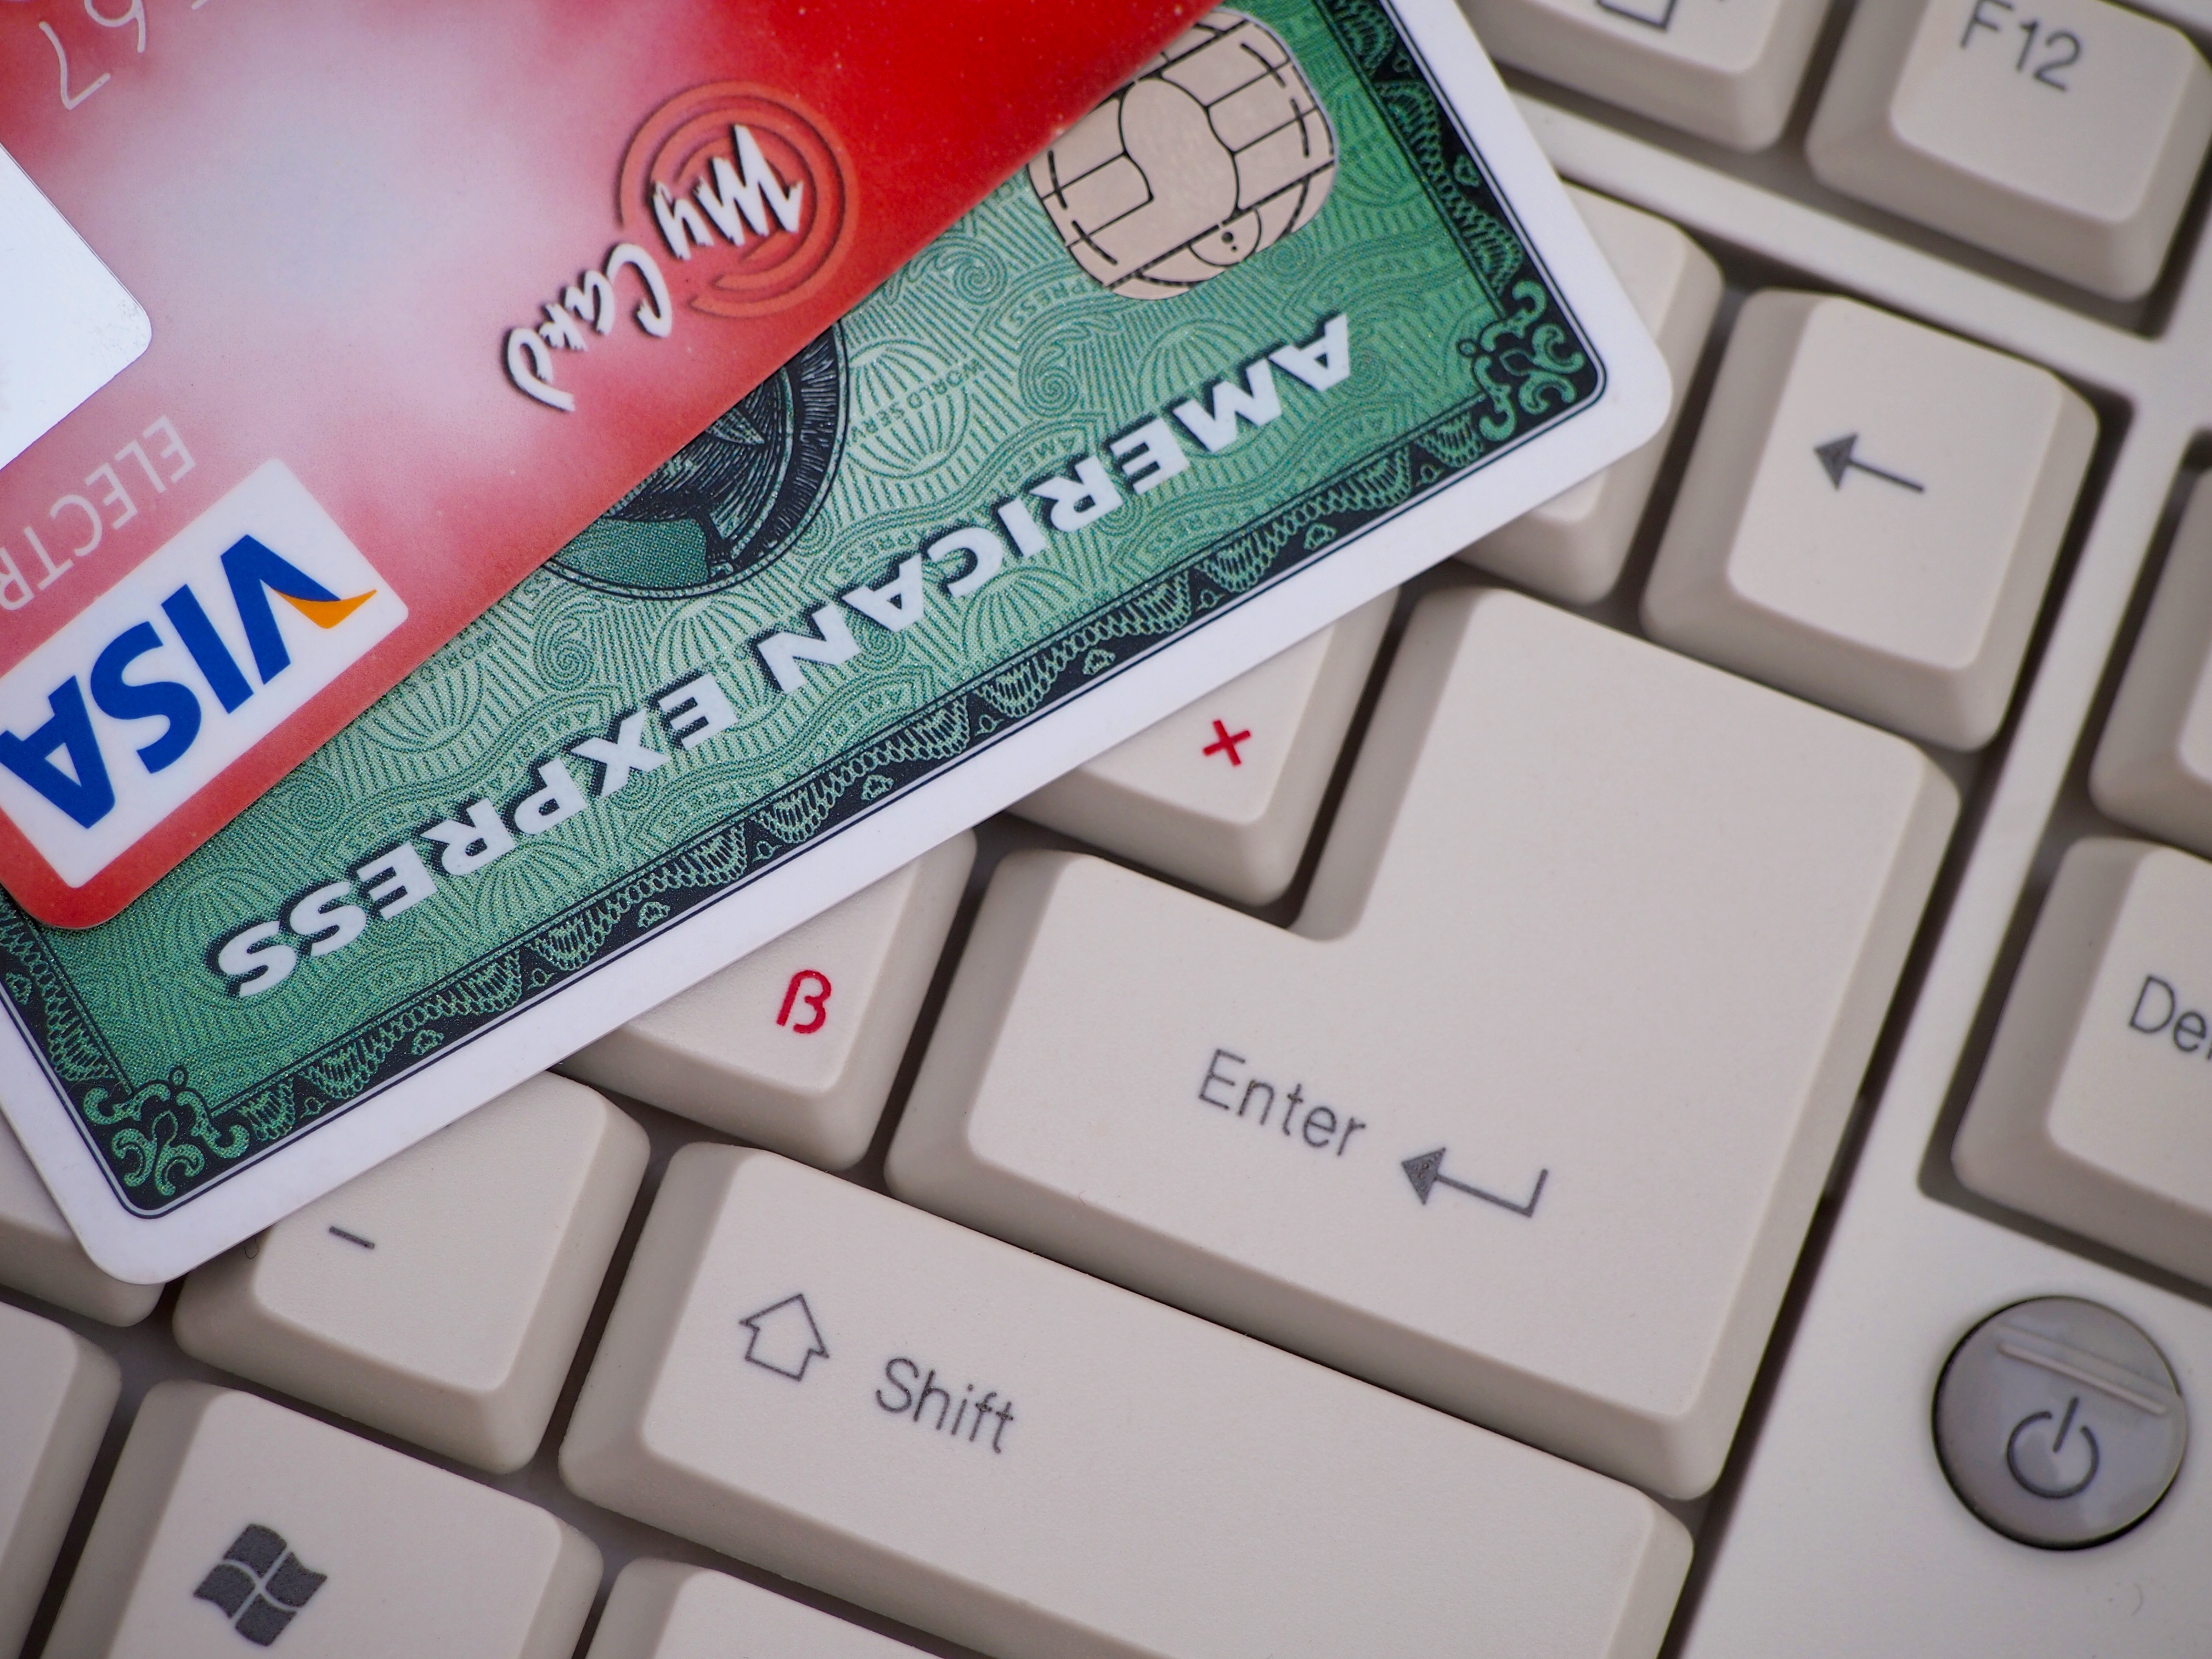 Bye bye American Express: Svi korisnici dobit će Visa karticu | 24sata